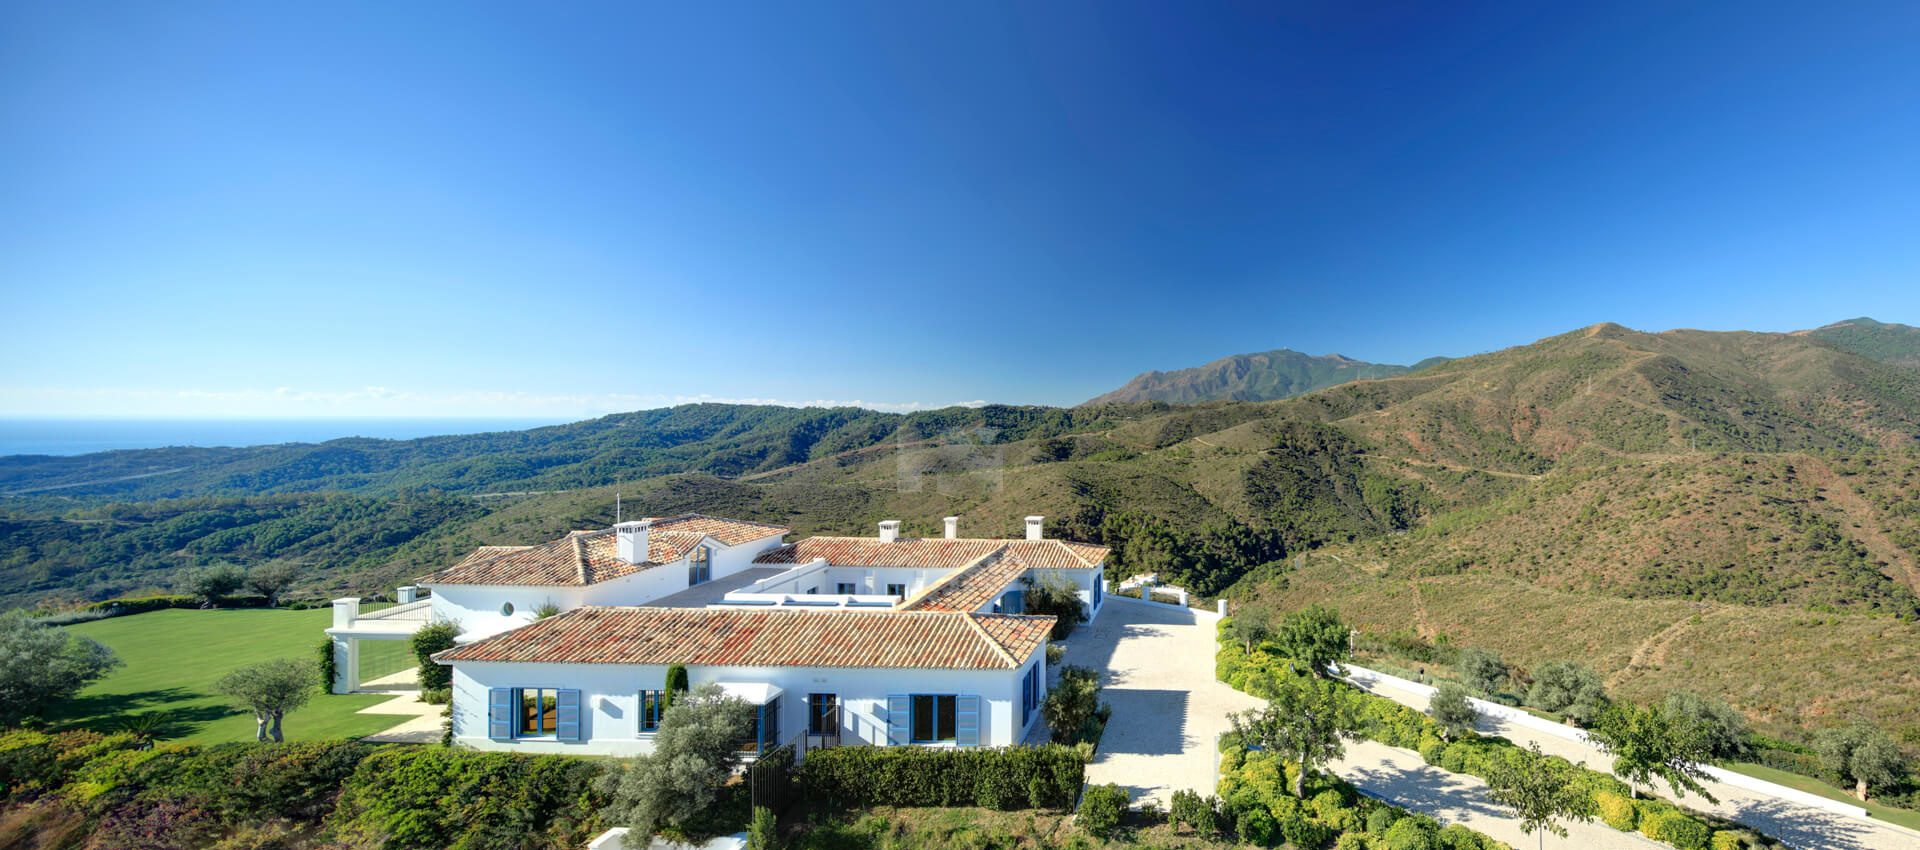 Eine luxuriöse Villa auf einem Doppelgrundstück mit Panoramablick auf das Mittelmeer und die Berge